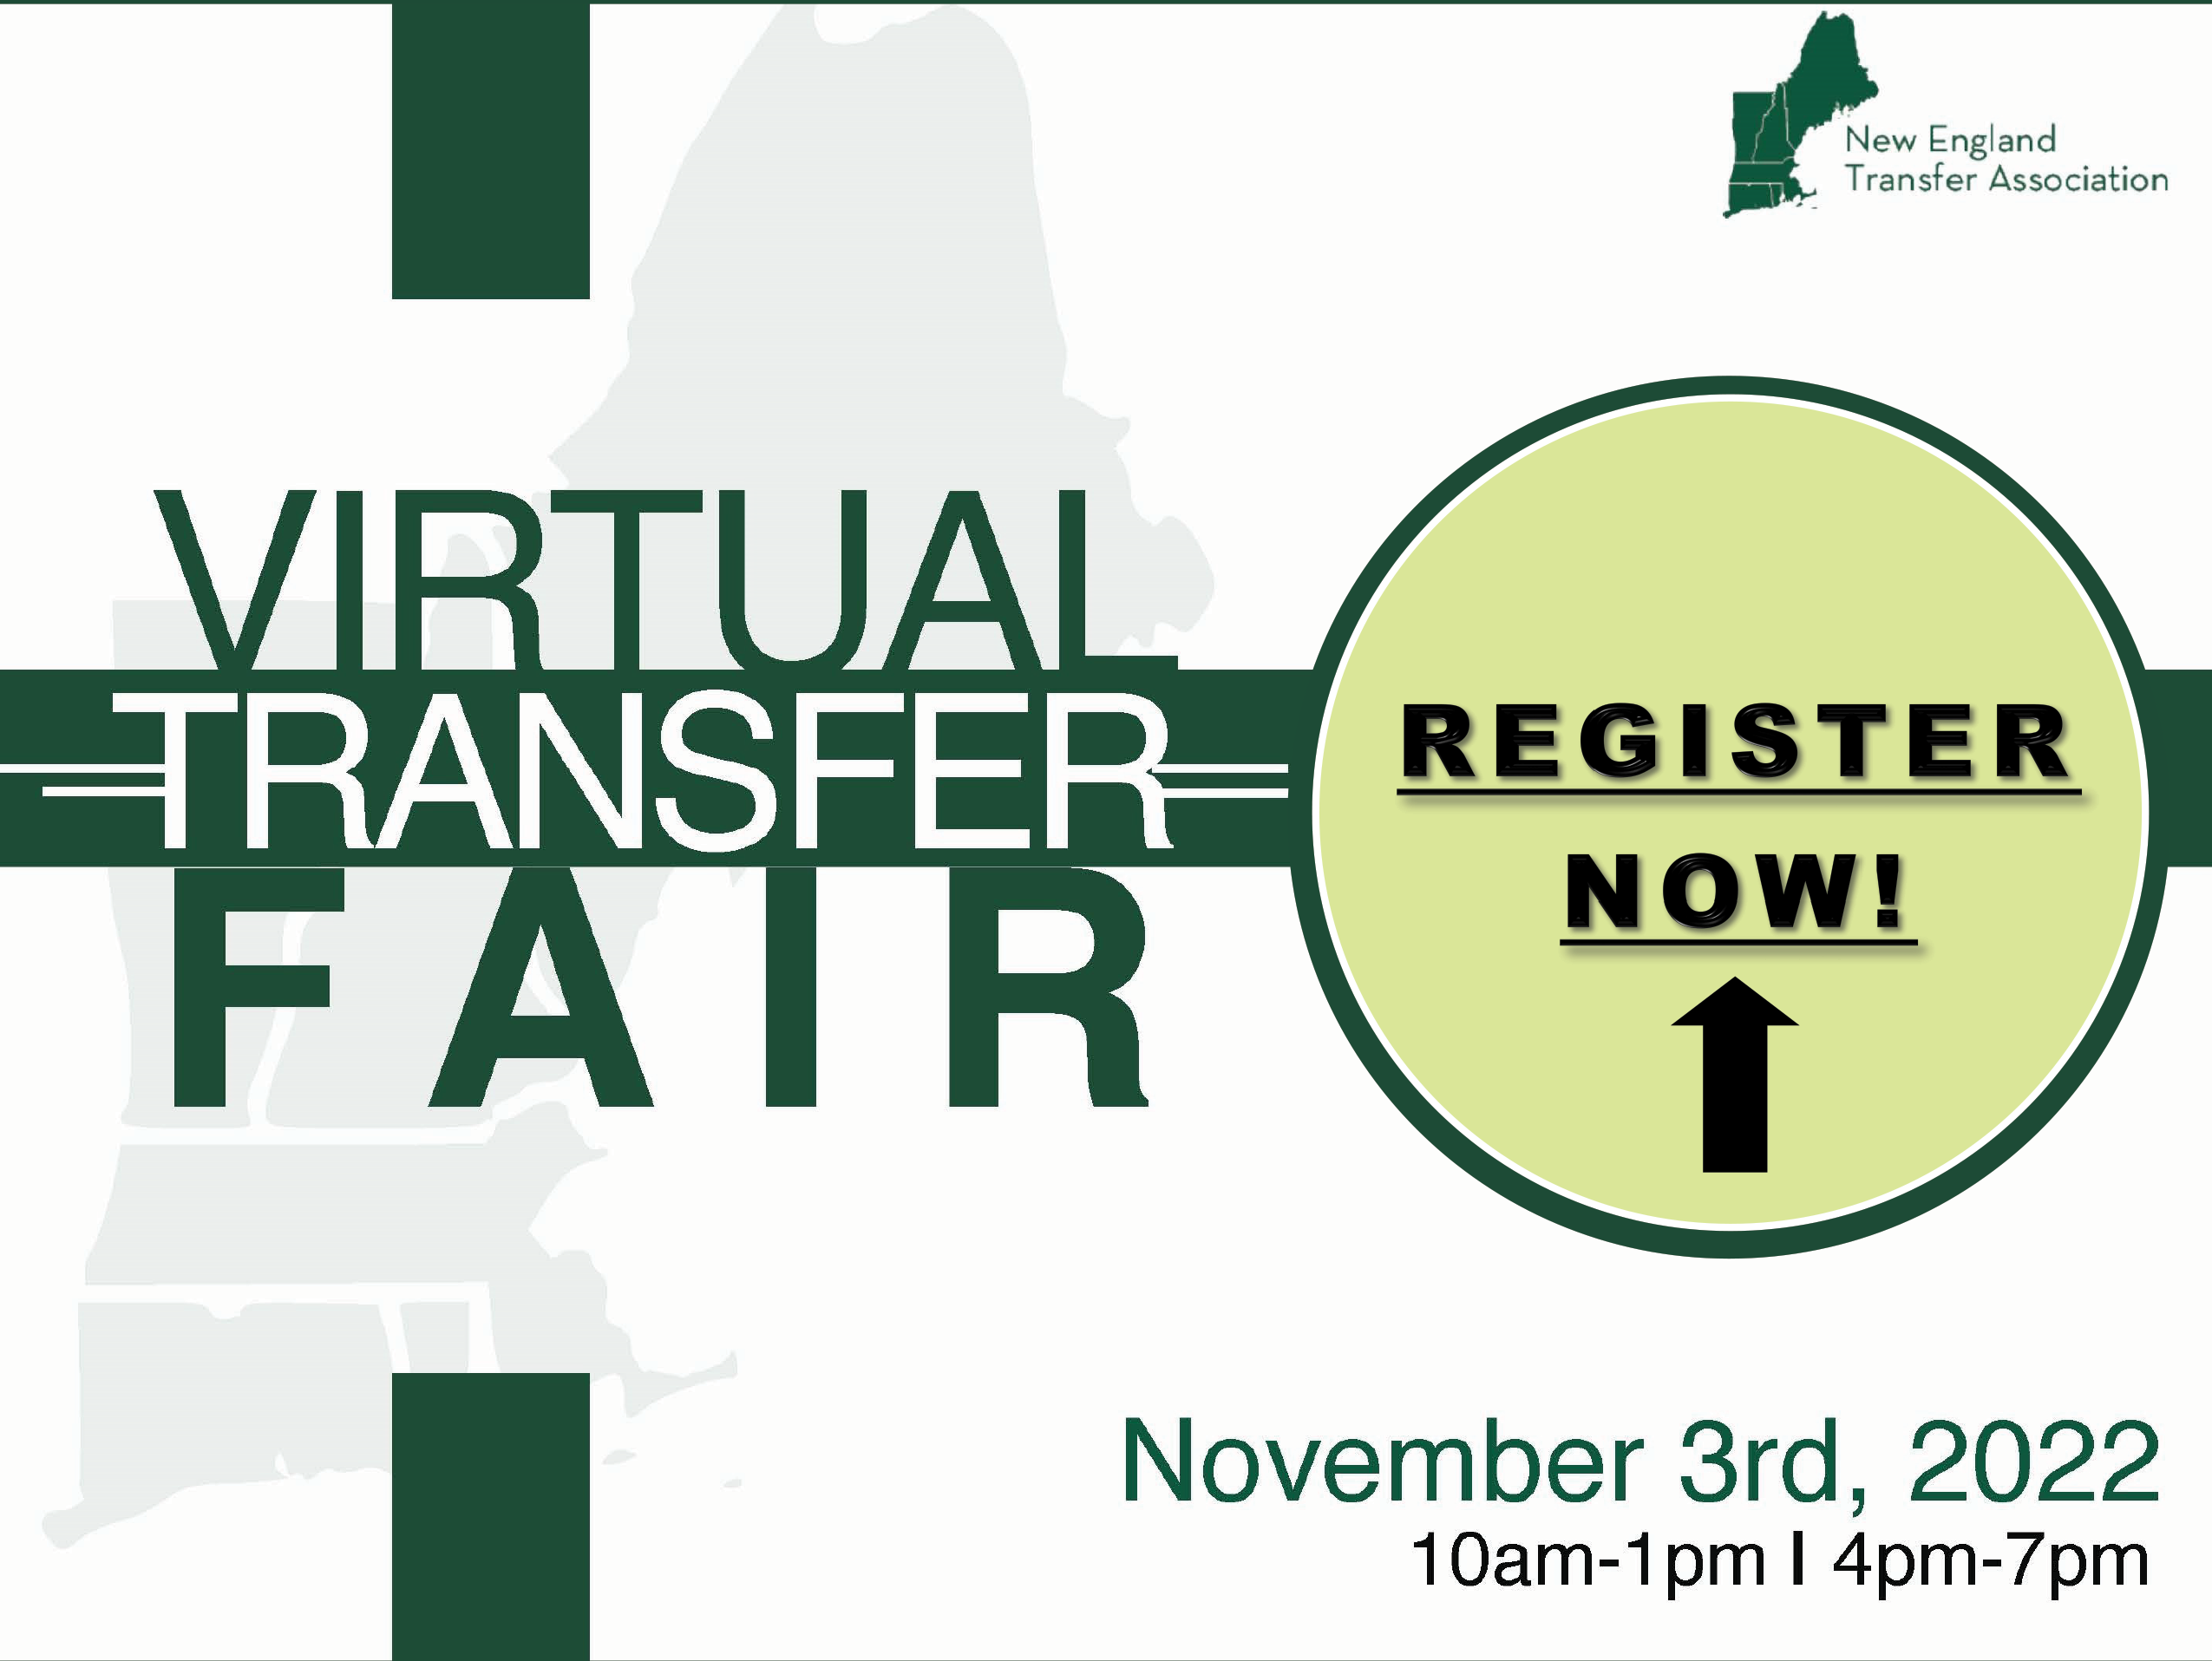 Virtual Transfer Fair. New England Transfer Association Transfer Fair. November 3, 2022 10 am-1 p.m. and 4-7 pm